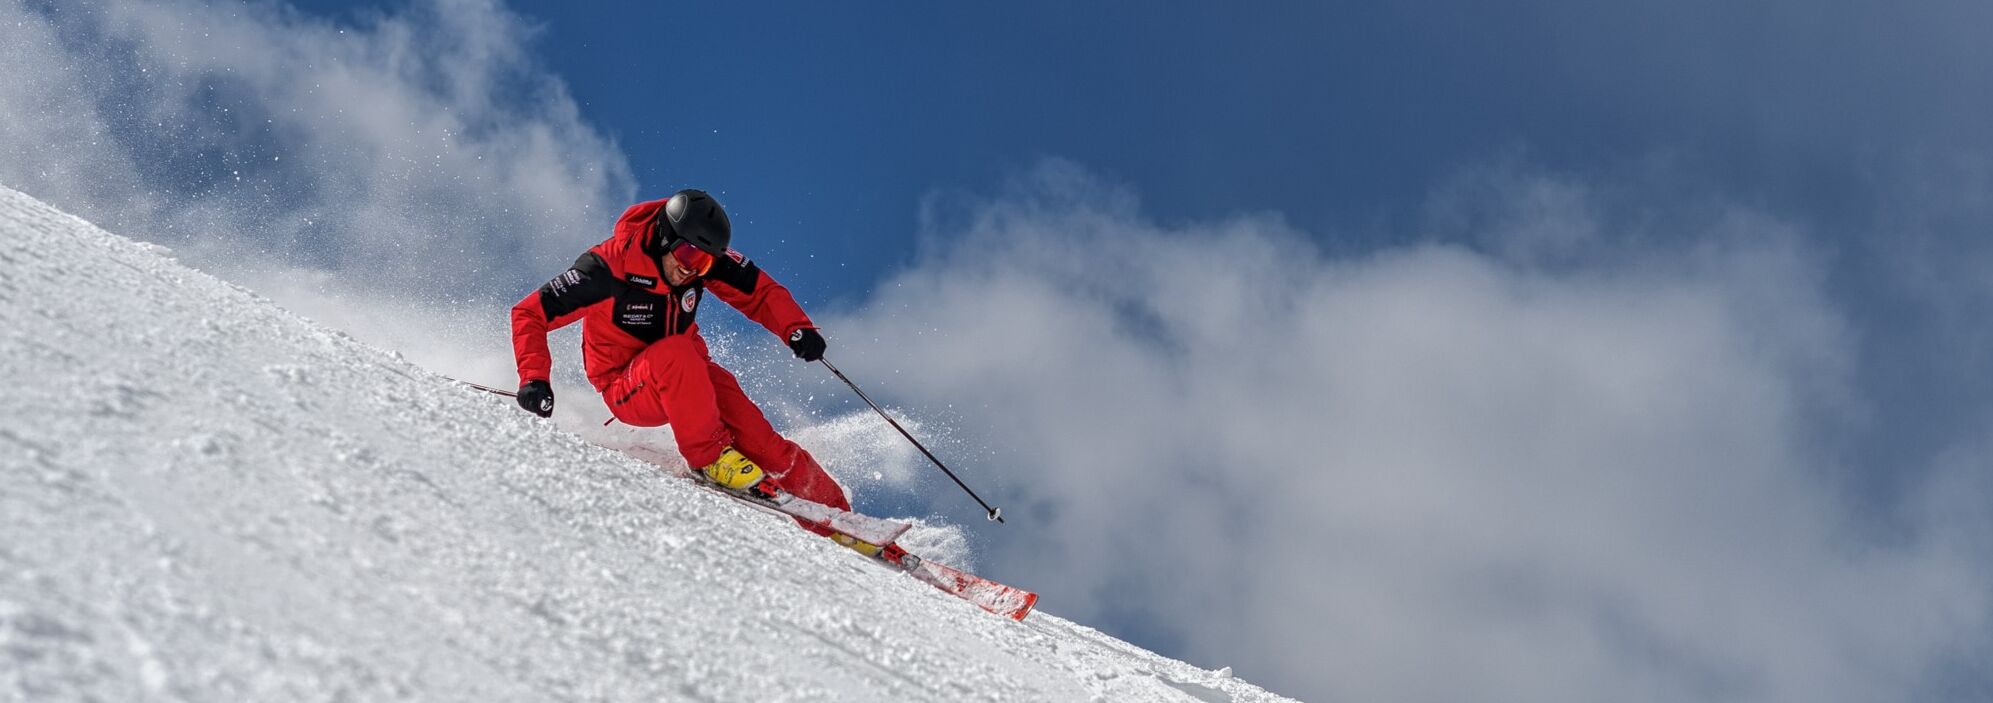 Ski private course of the ski school Klosters 